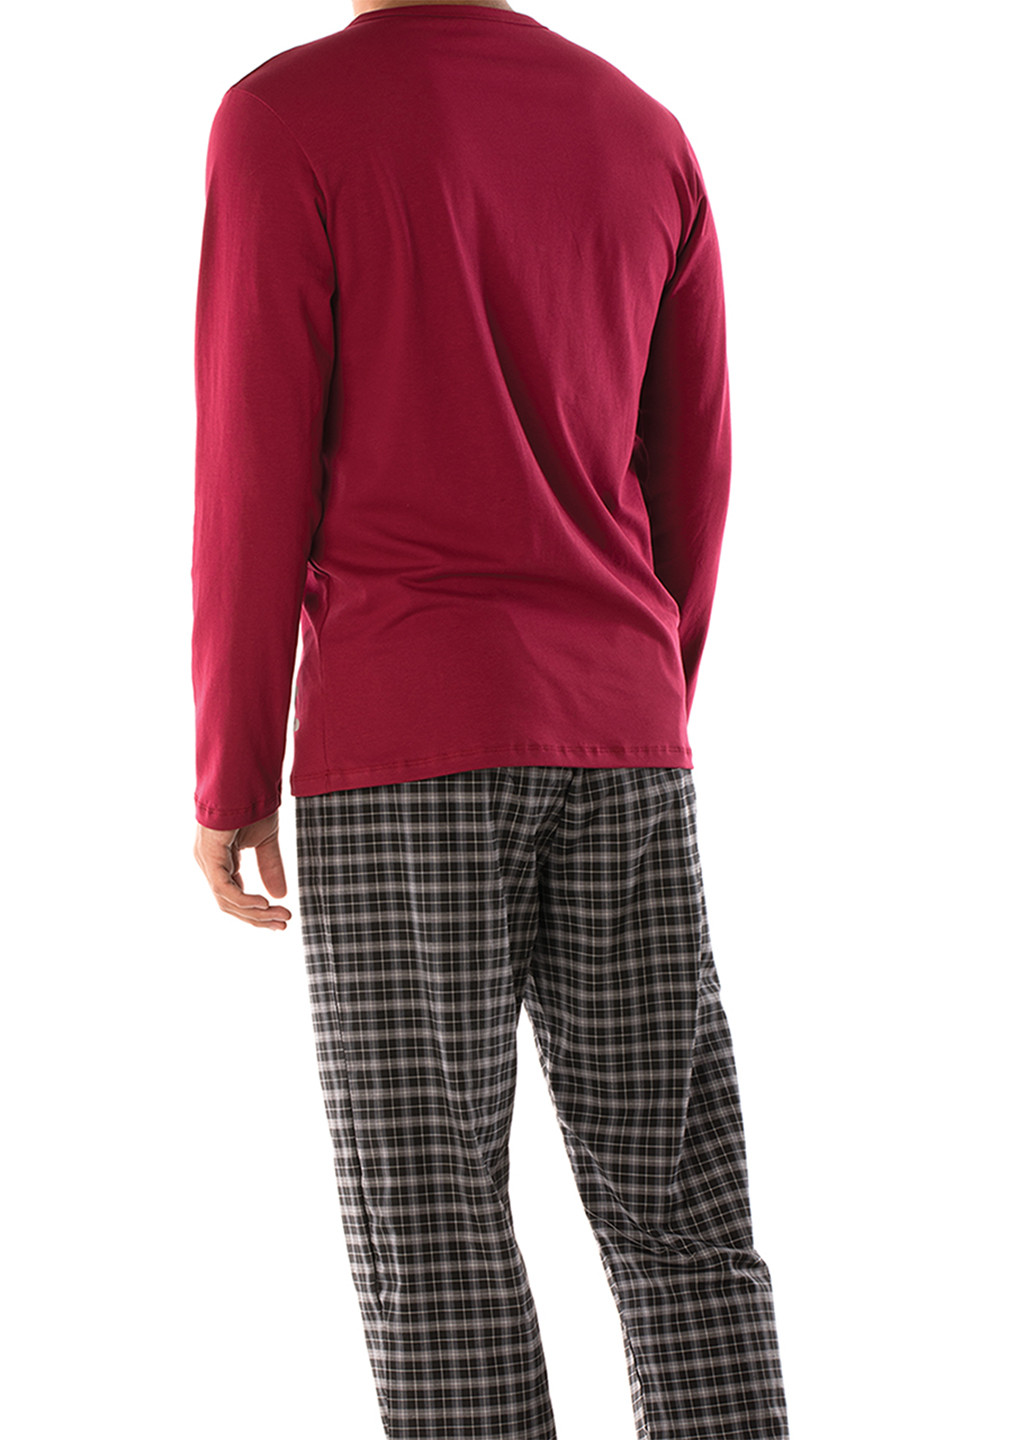 Пижама (лонгслив, брюки) DoReMi лонгслив + брюки клетка бордовая домашняя хлопок